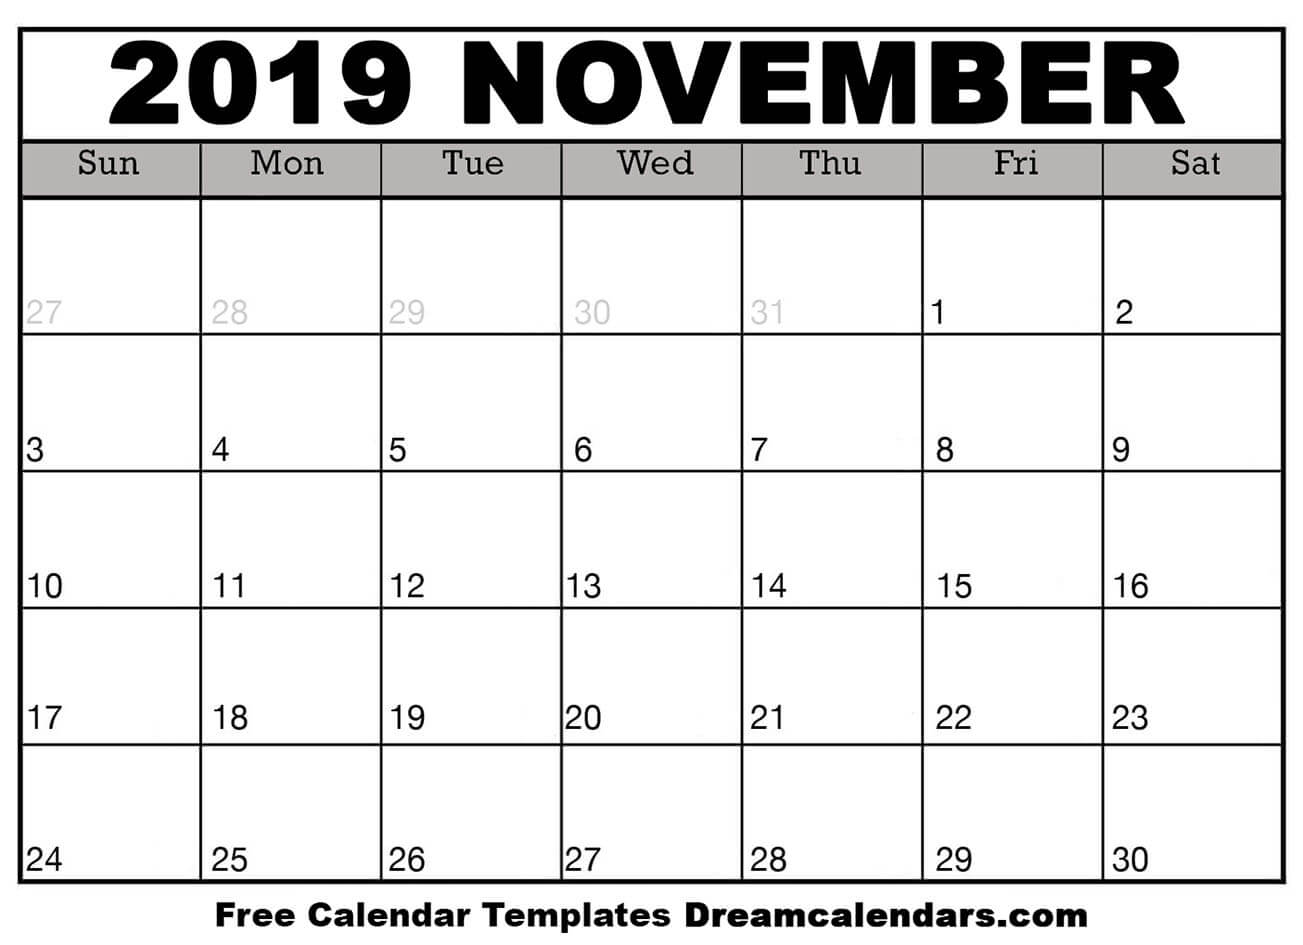 astrological calendar for november 2019